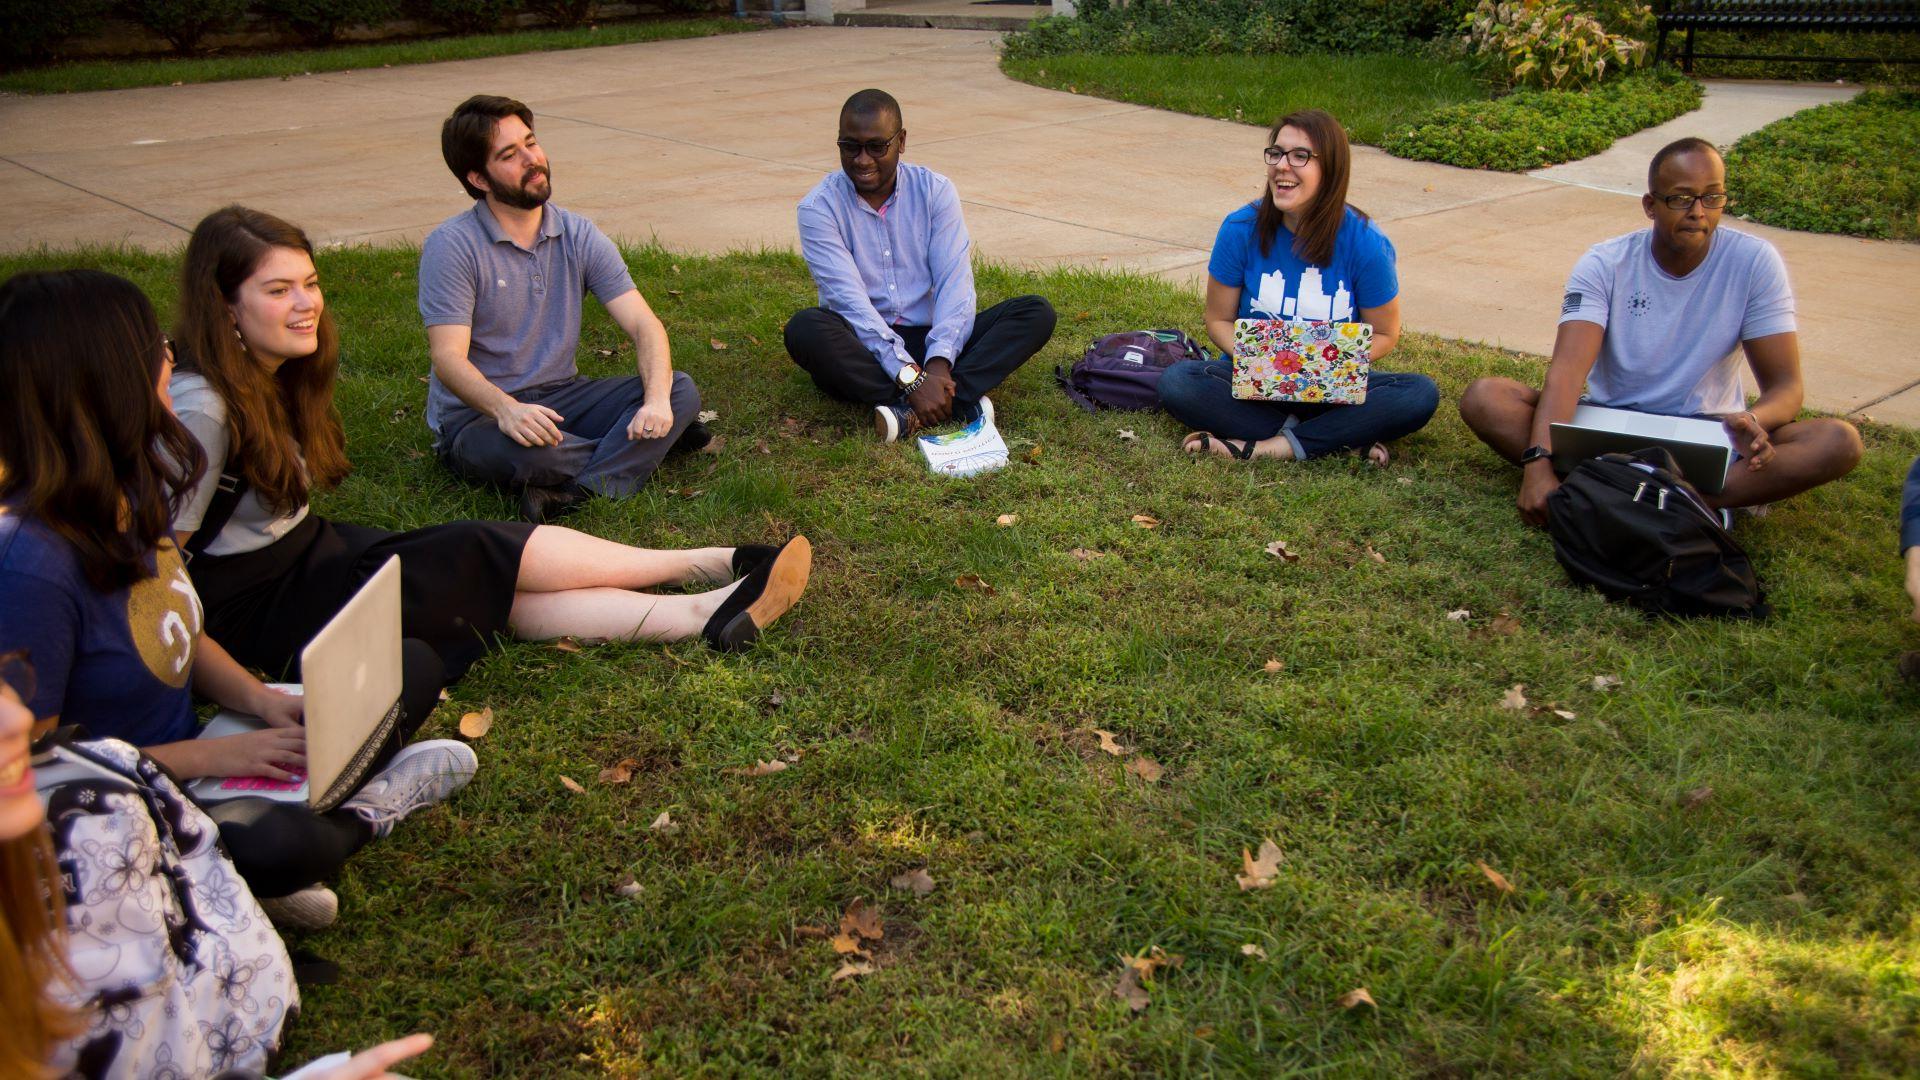 学生们在校园草坪上围成一圈坐着. 他们正在和政治学教授进行讨论. 有些人把打开的笔记本电脑放在腿上.